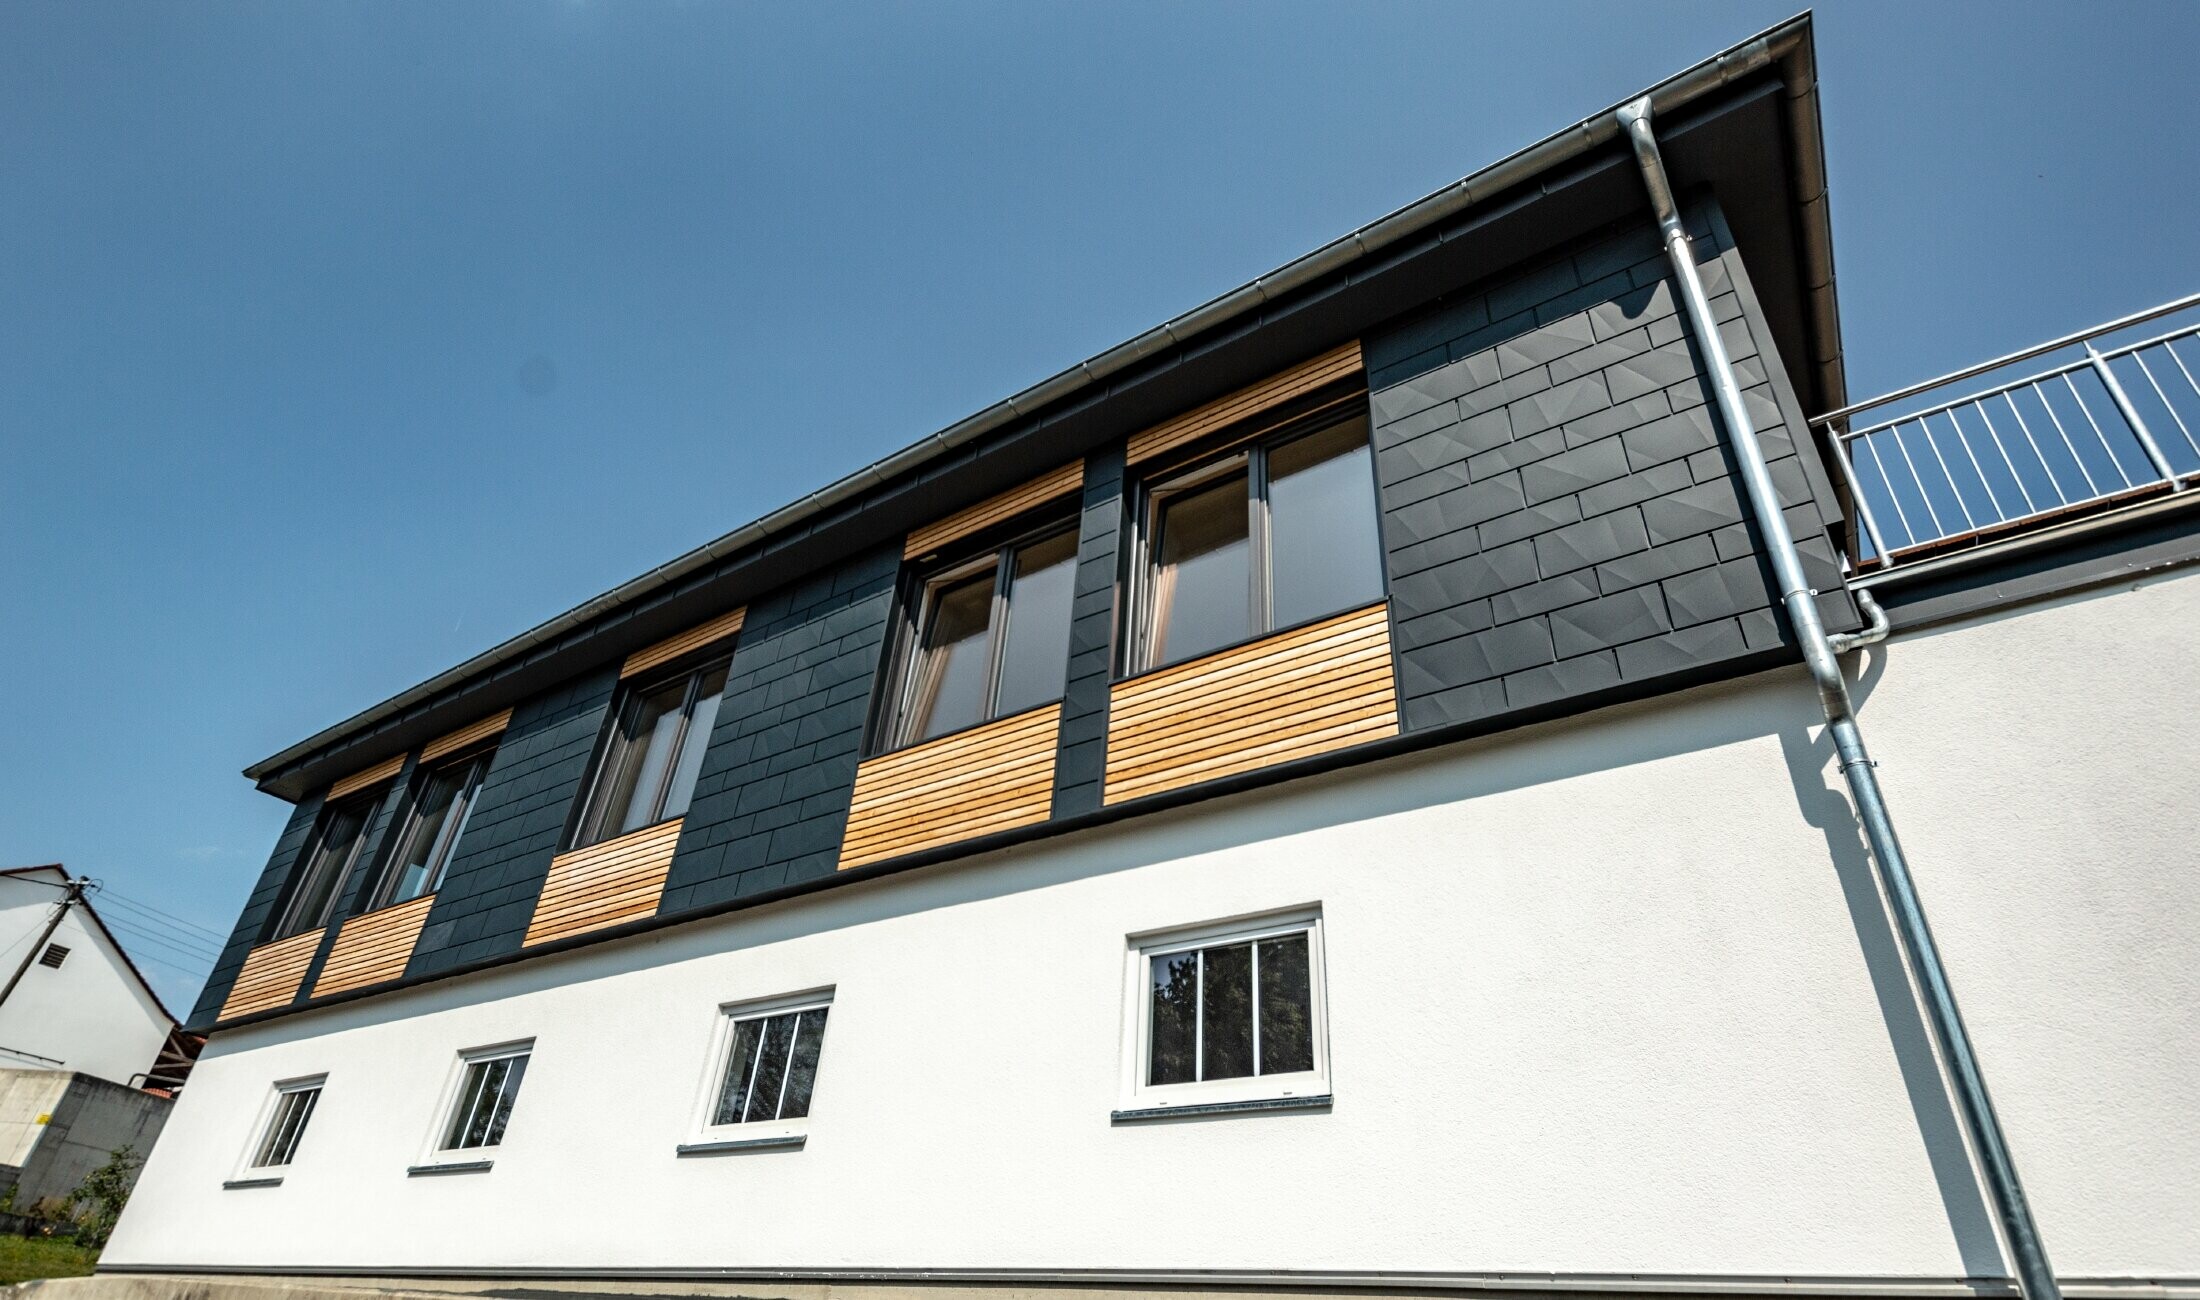 Fasaddesign med olika byggmaterial, aluminium PREFA Siding.X i antracit, en horisontell träfasad och en vit putsfasad.